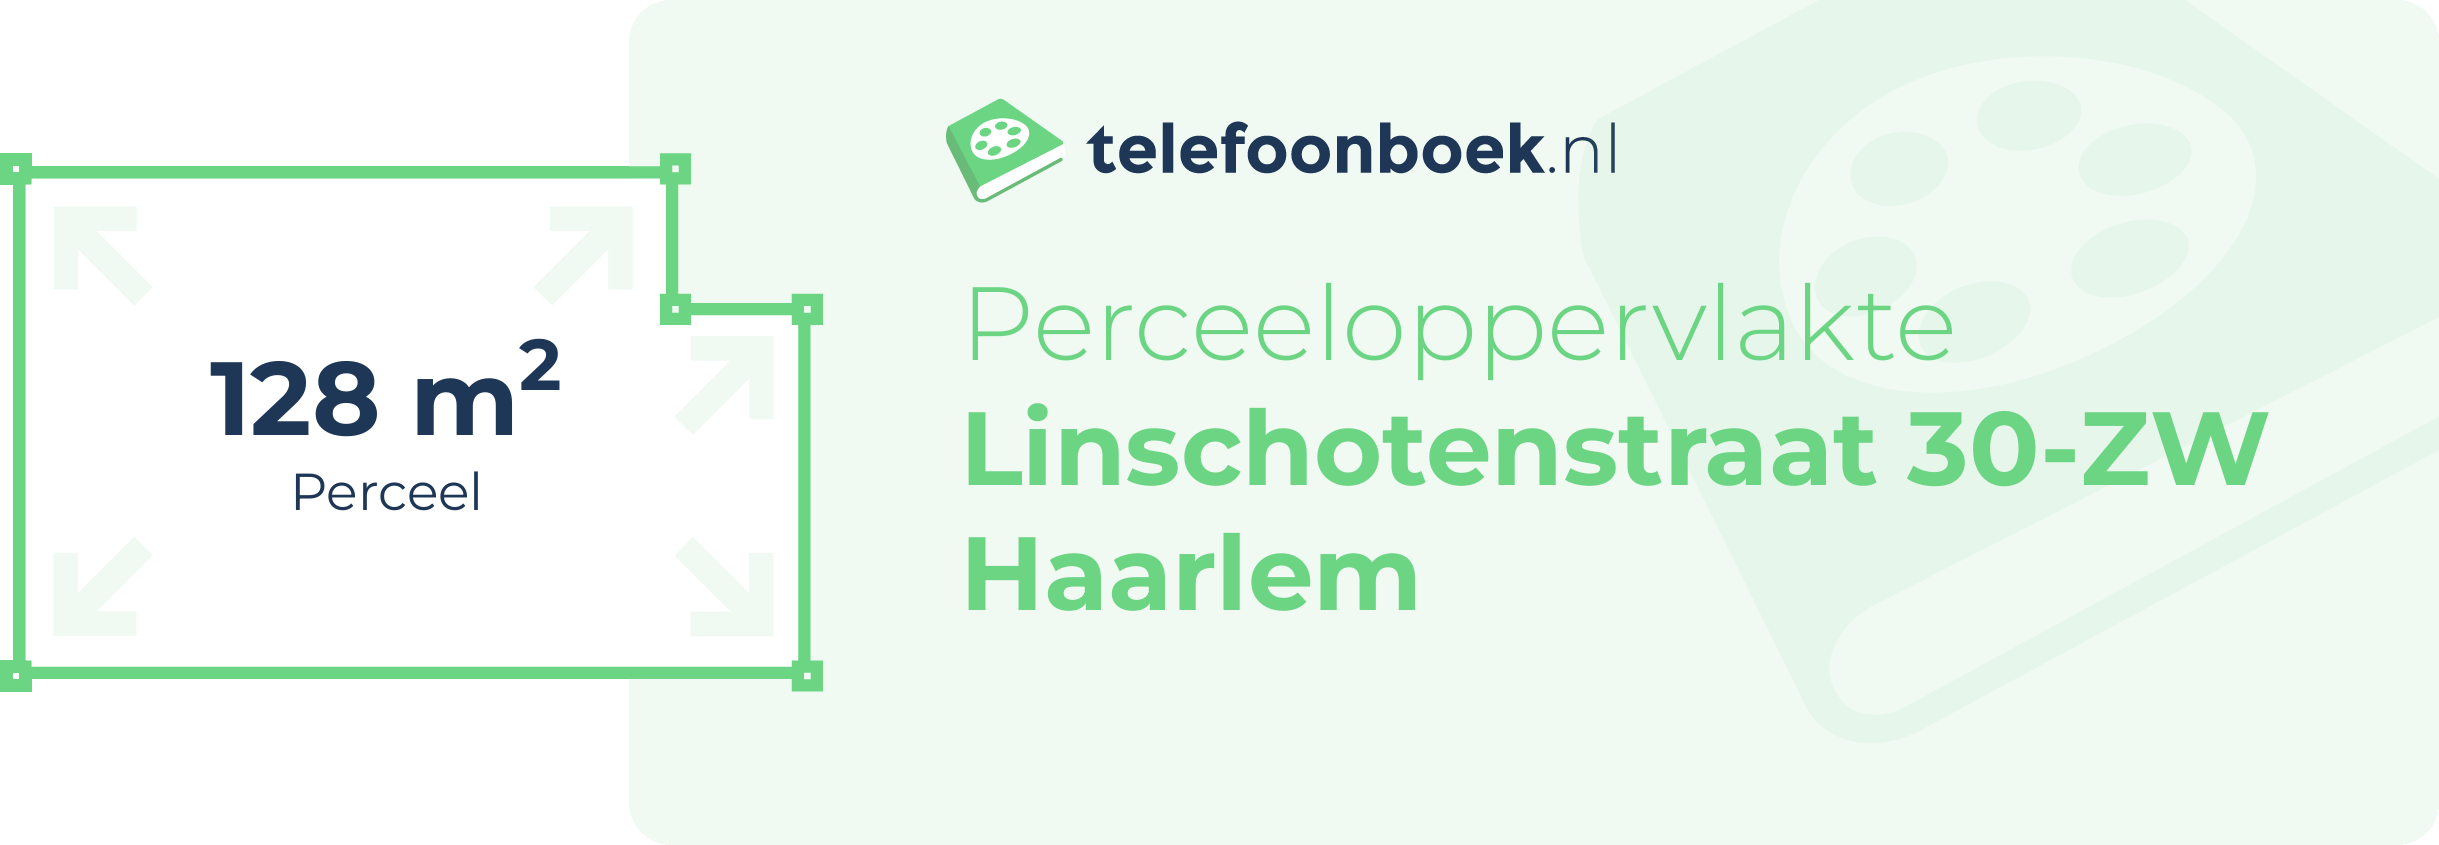 Perceeloppervlakte Linschotenstraat 30-ZW Haarlem